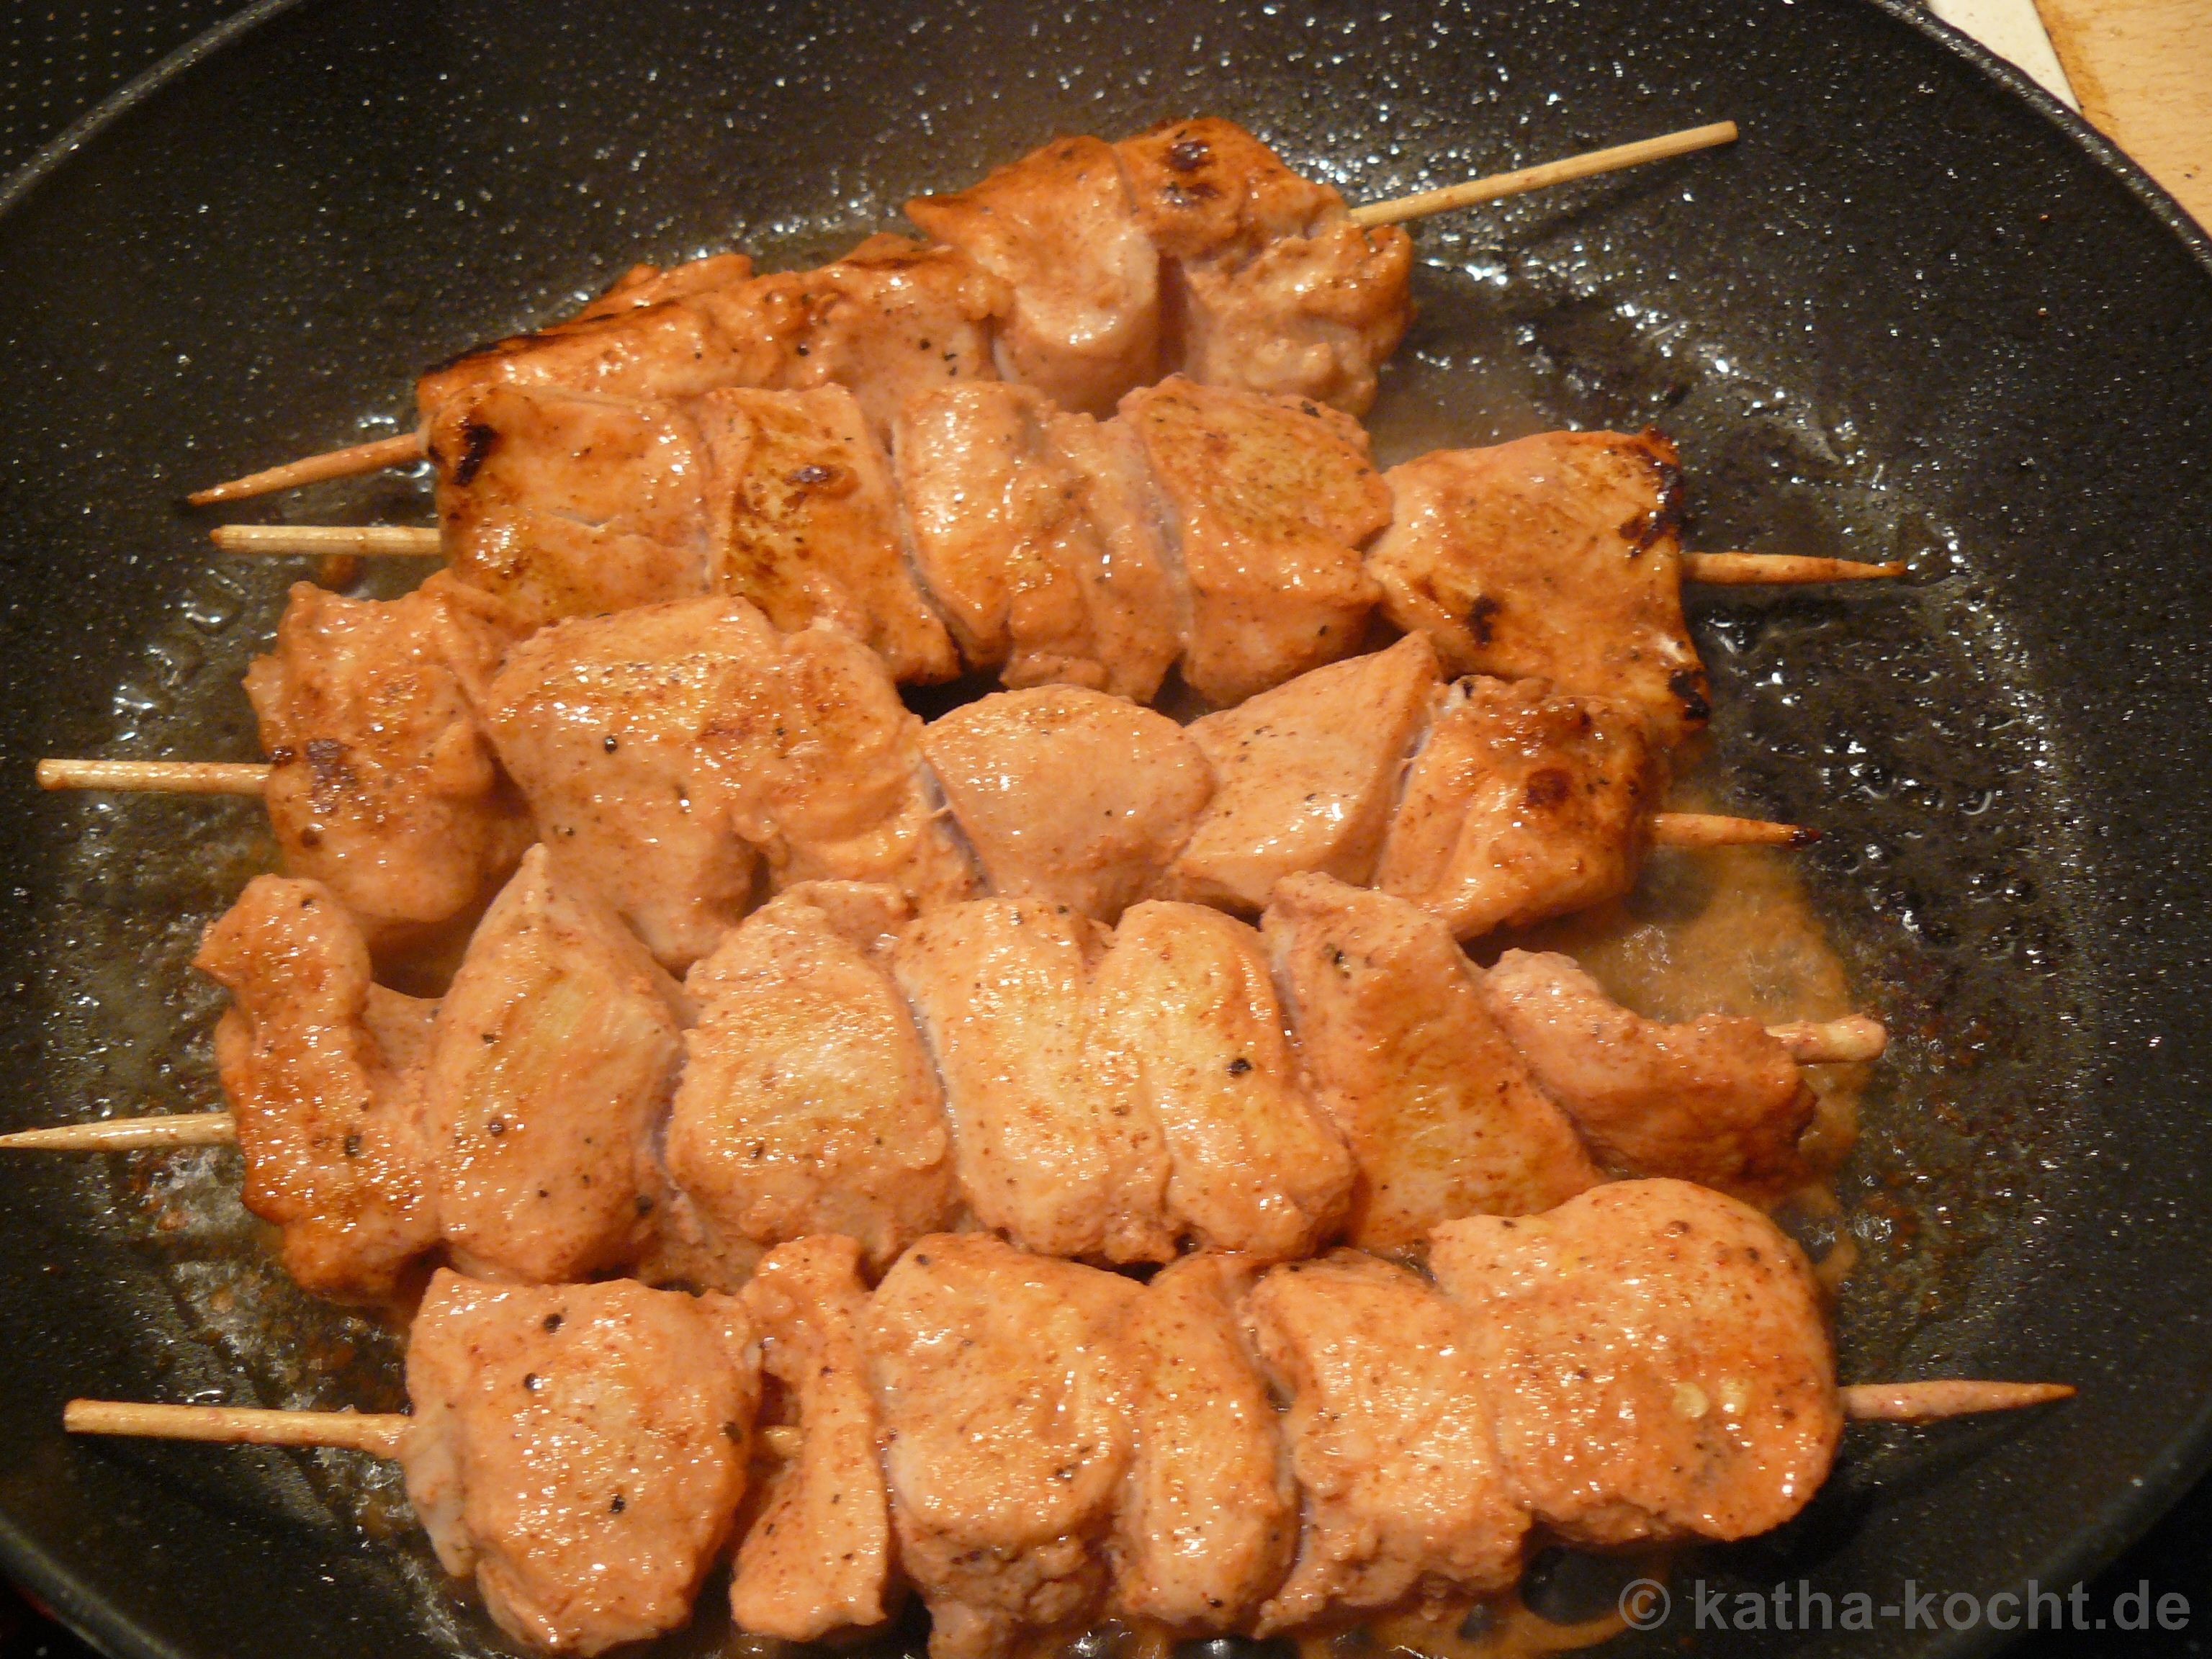 Tandoori-Chicken Spieße mit Reis und Guacamole - Katha-kocht!